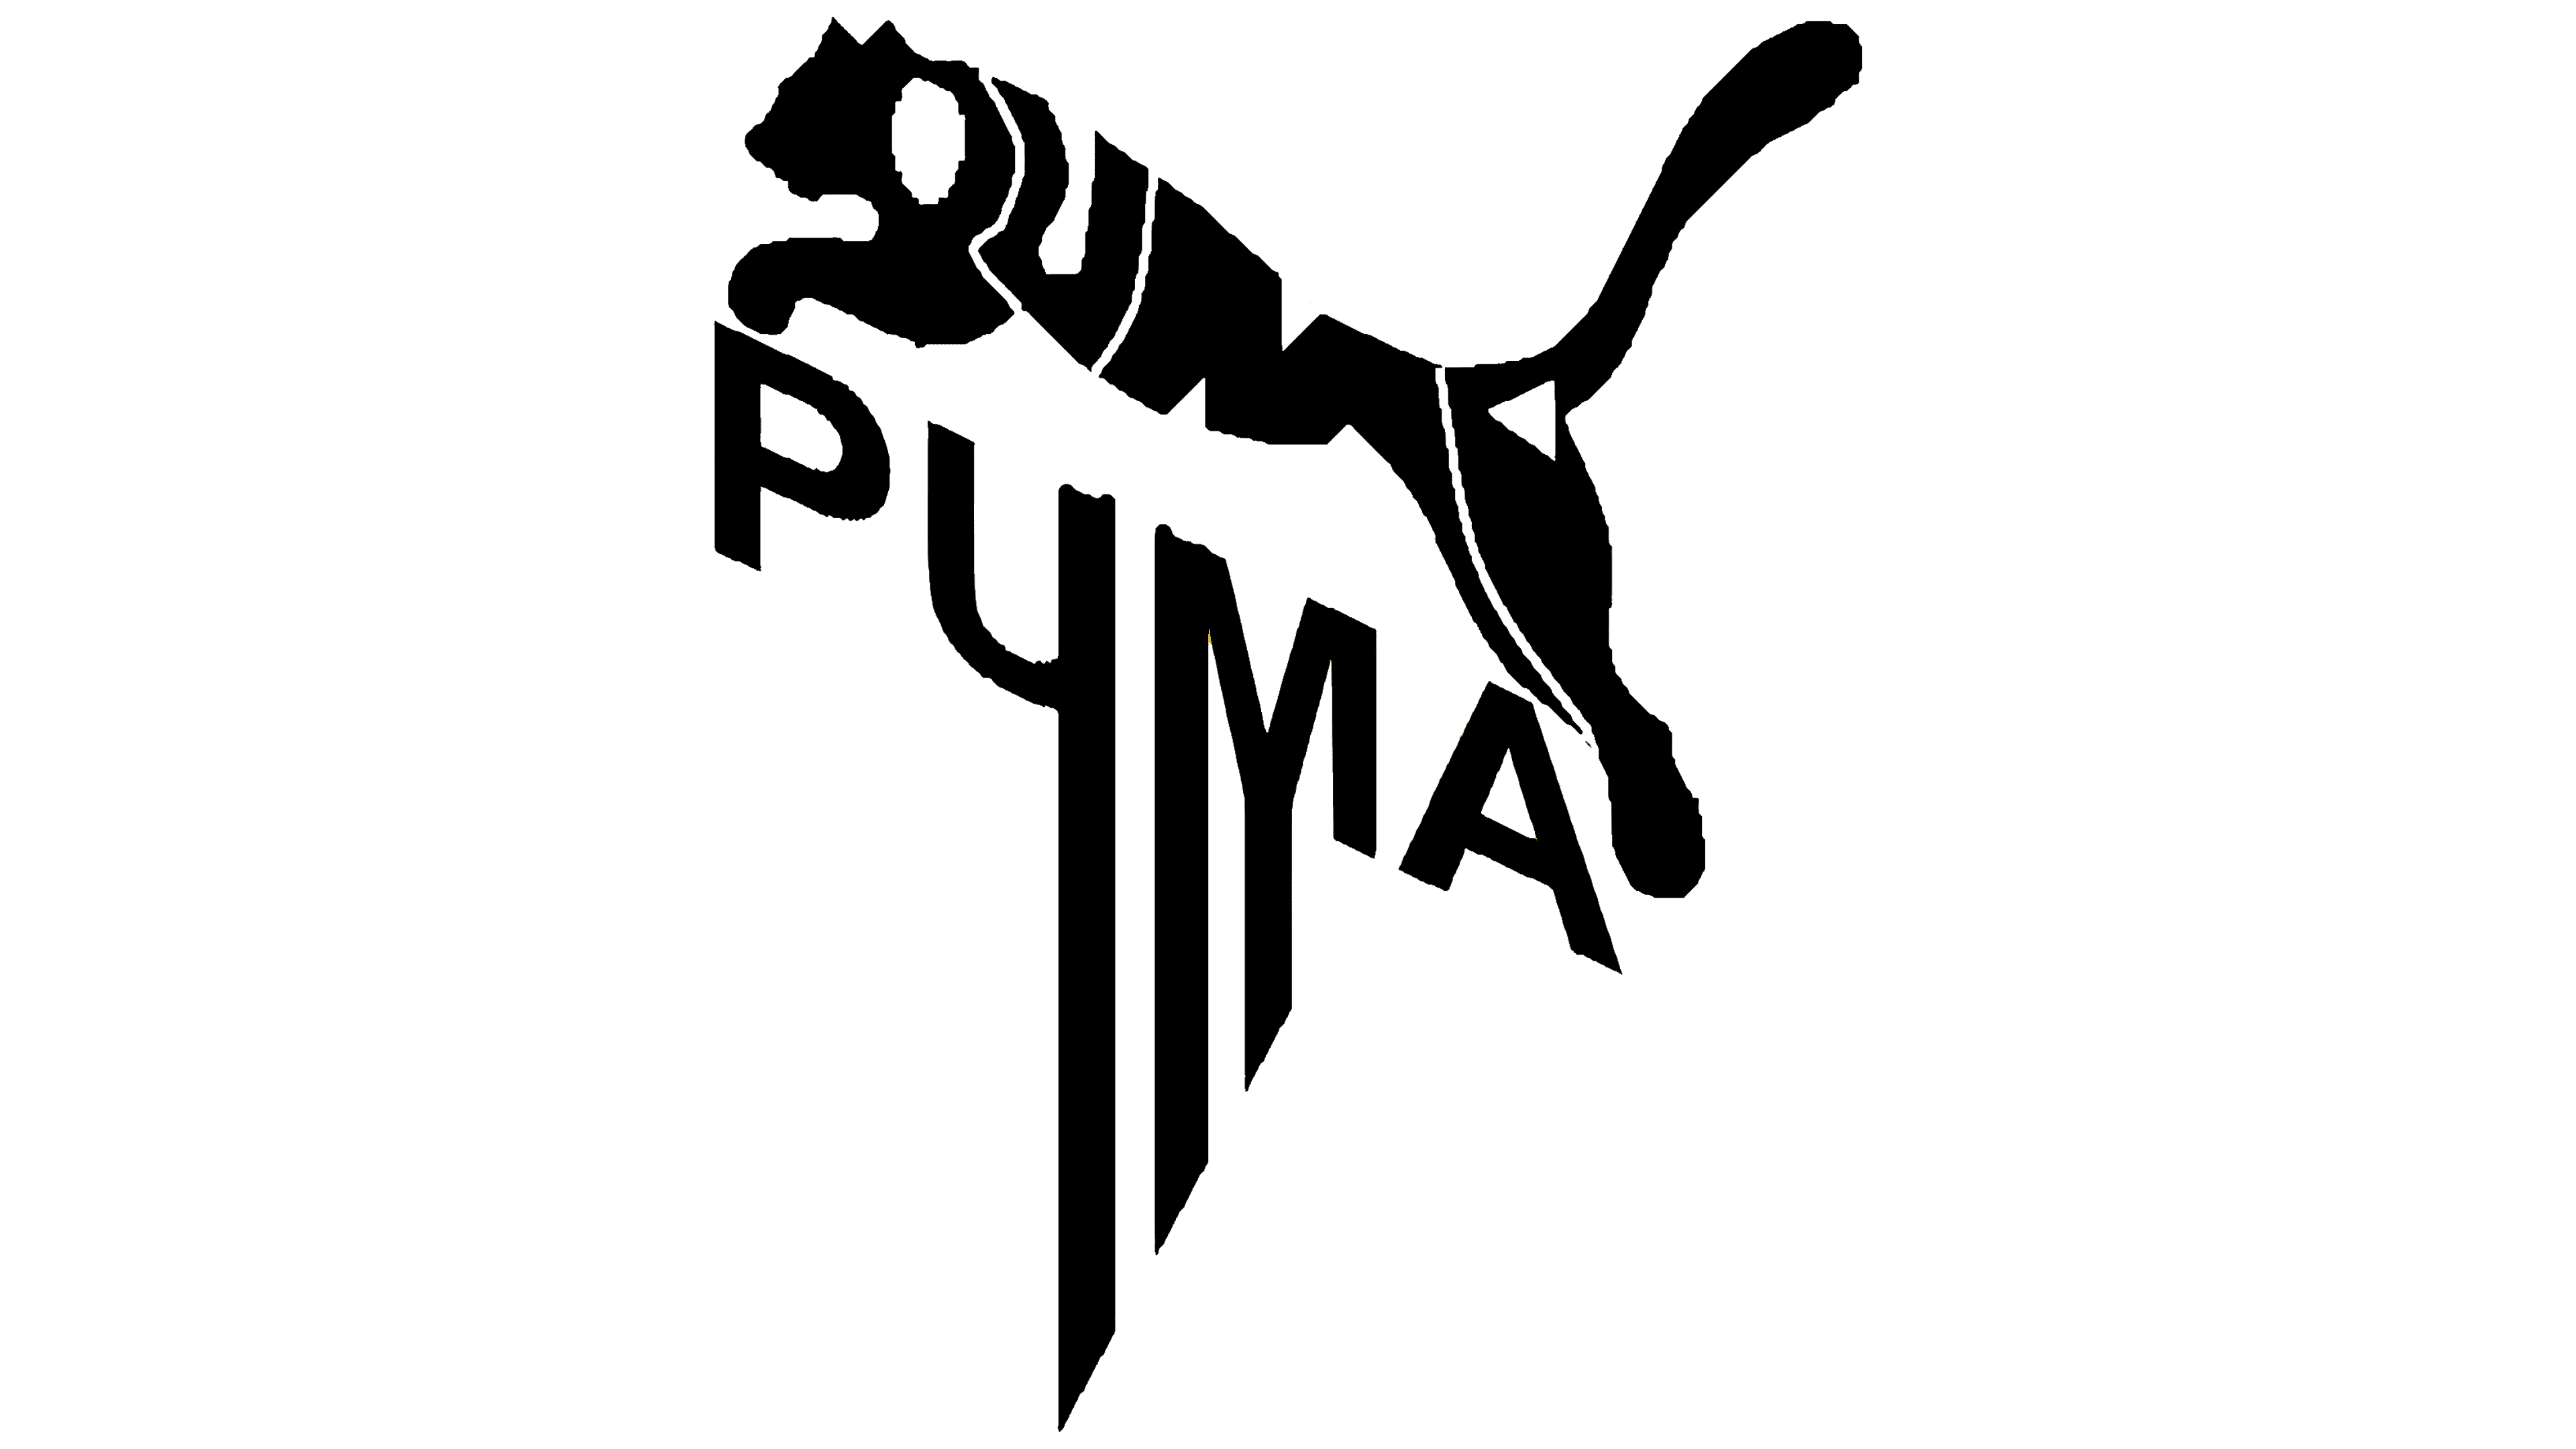 puma log